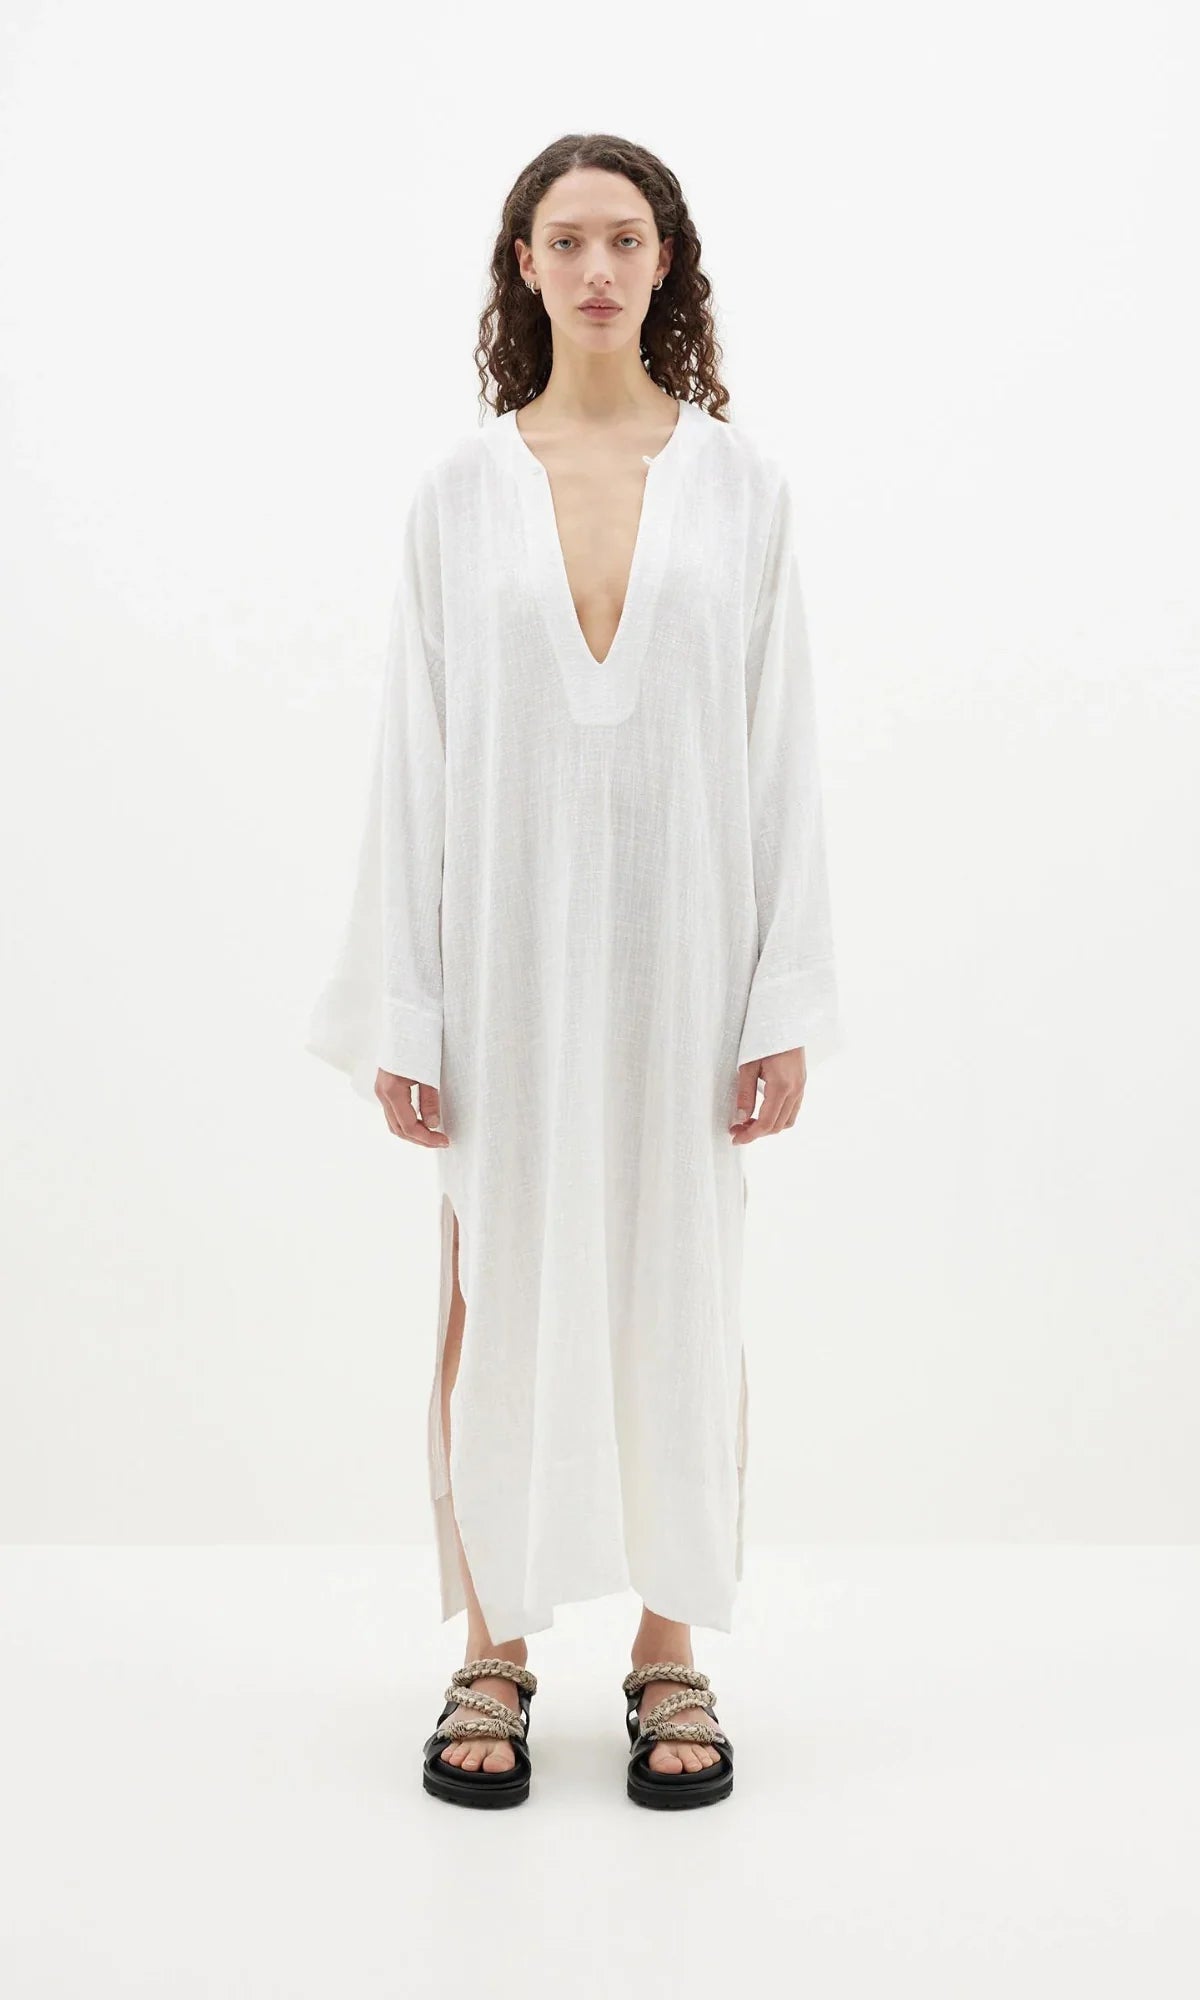 GUAZE LONGERLINE DRESS - WHITE